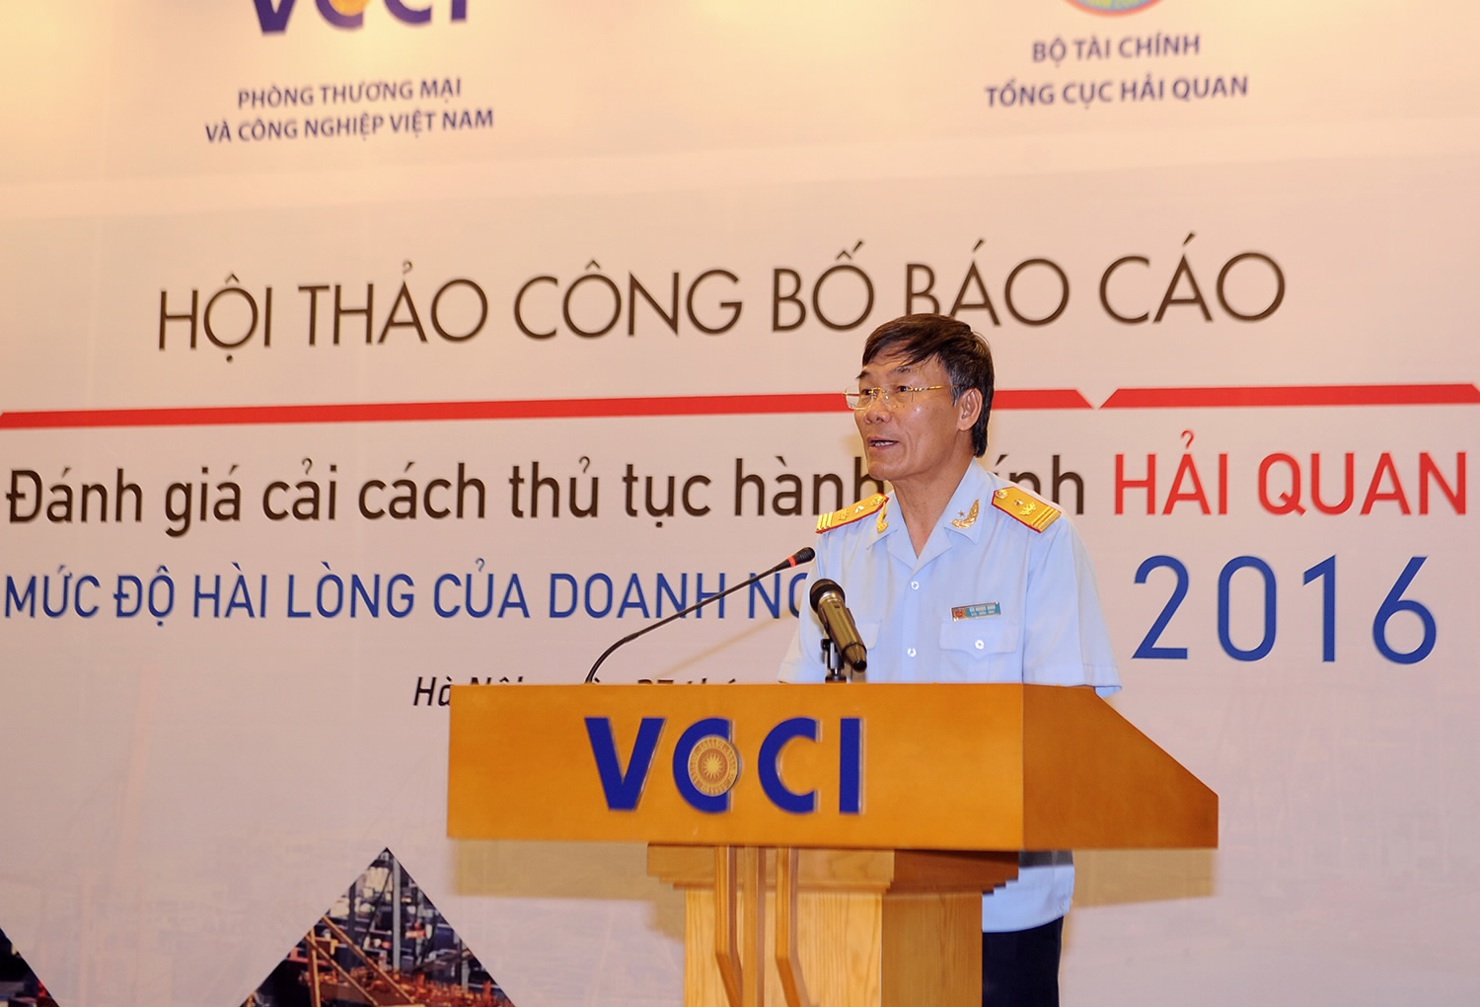 Ông Vũ Ngọc Anh - Phó Tổng cục trưởng Tổng cục Hải quan phát biểu tại Hội thảo công bố Báo cáo.